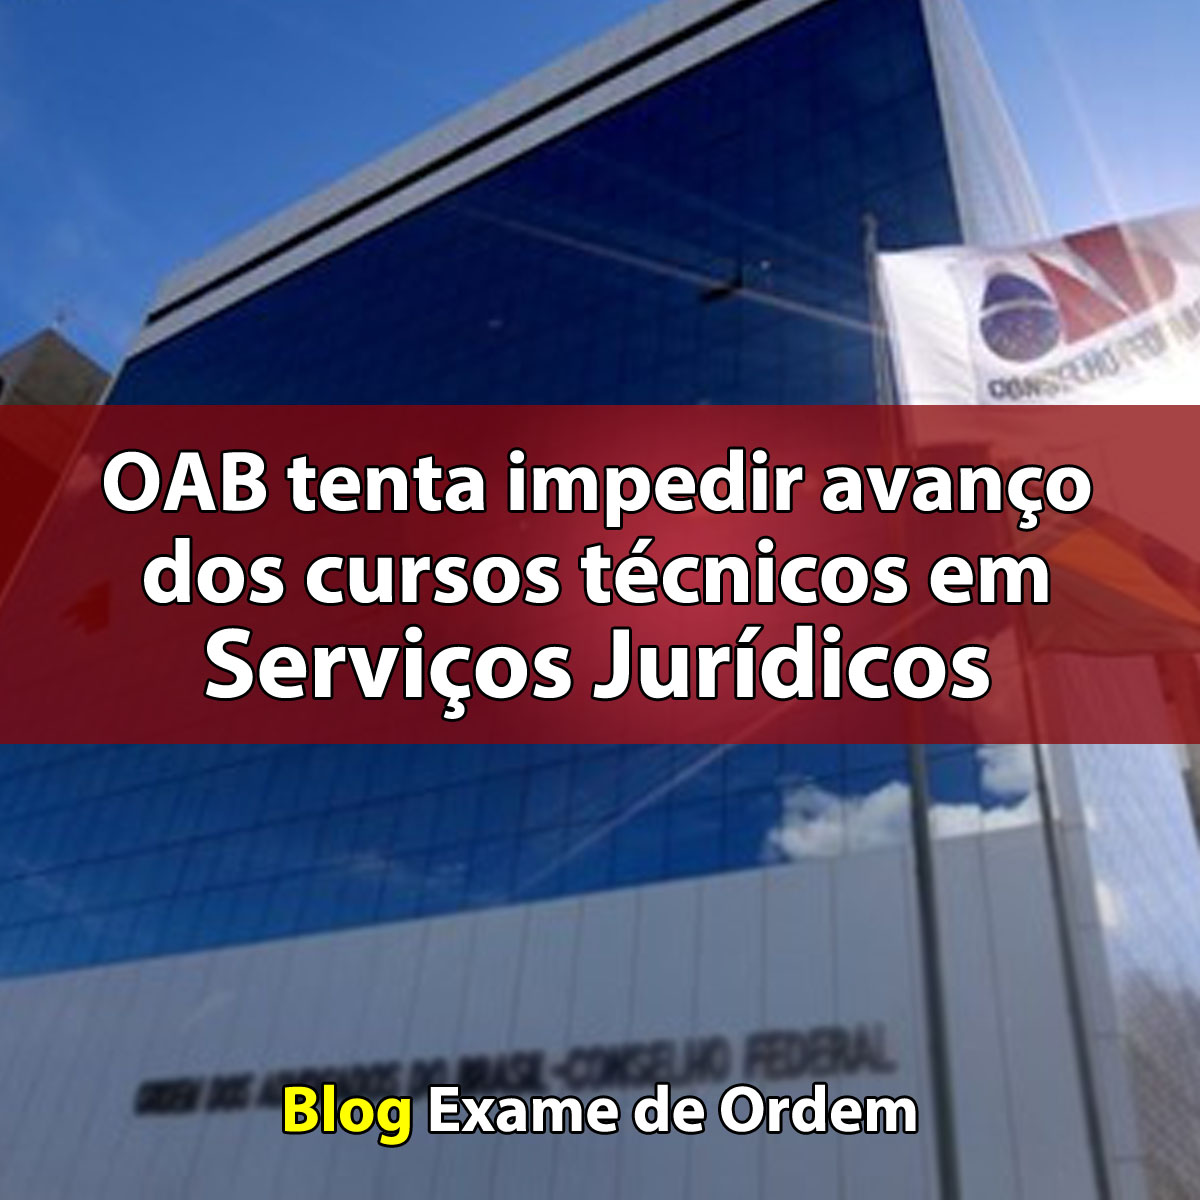 OAB tenta impedir avanço dos cursos técnicos em Serviços Jurídicos